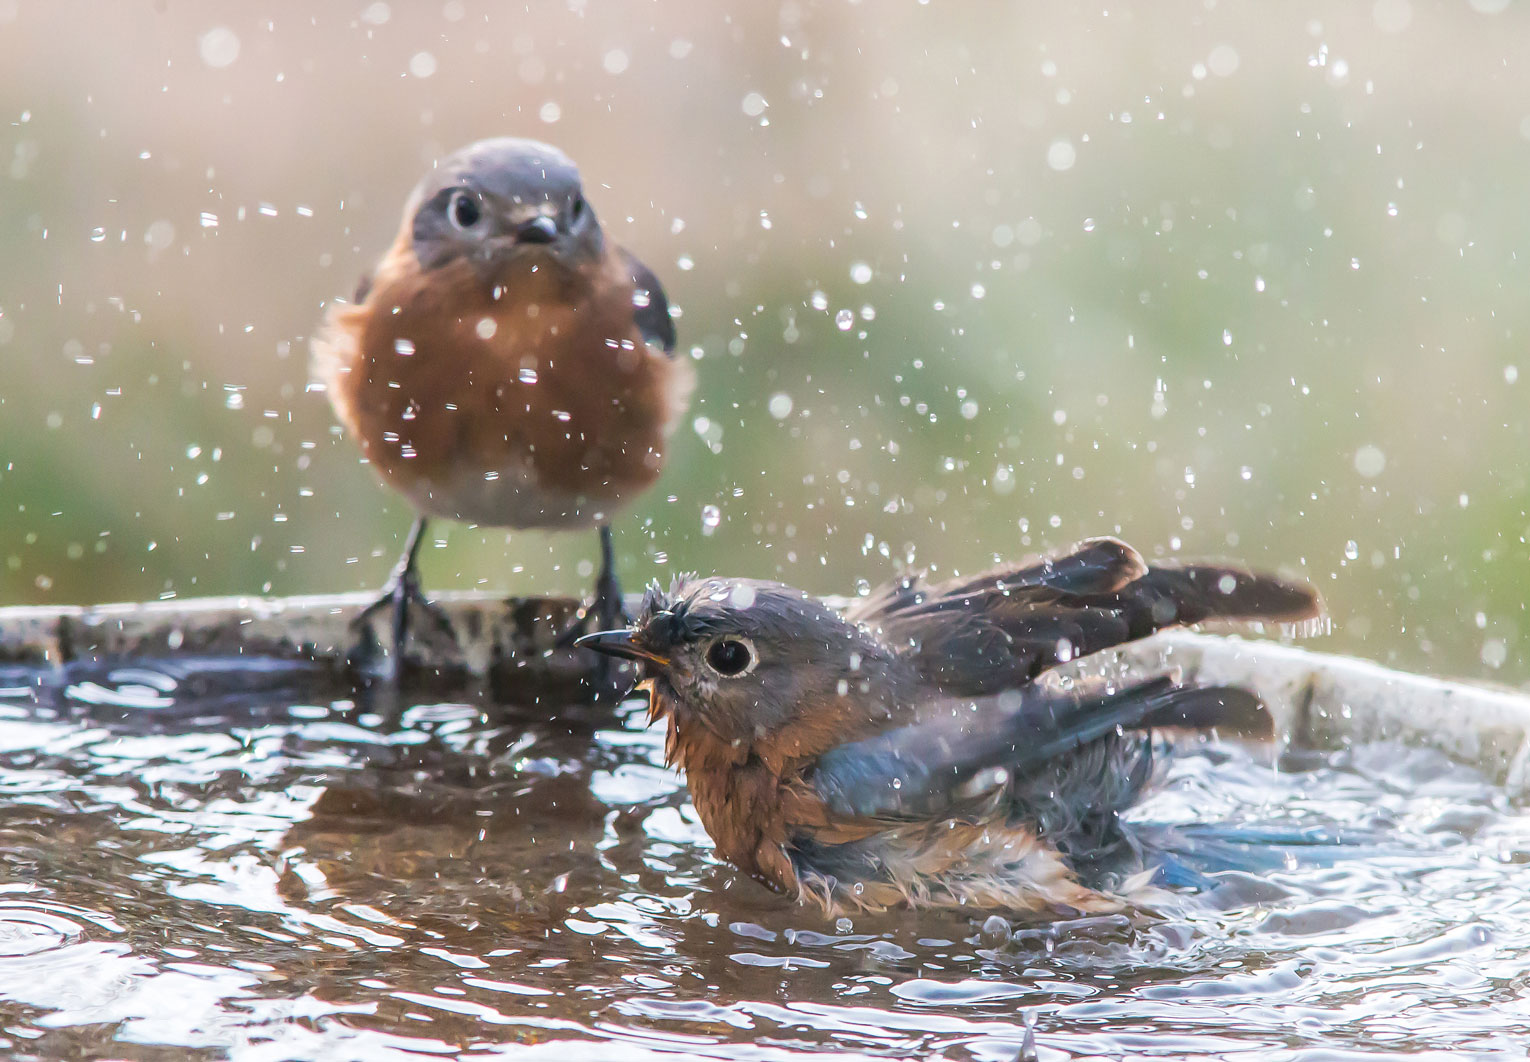 A photo of birds enjoying a splash in a bird bath.